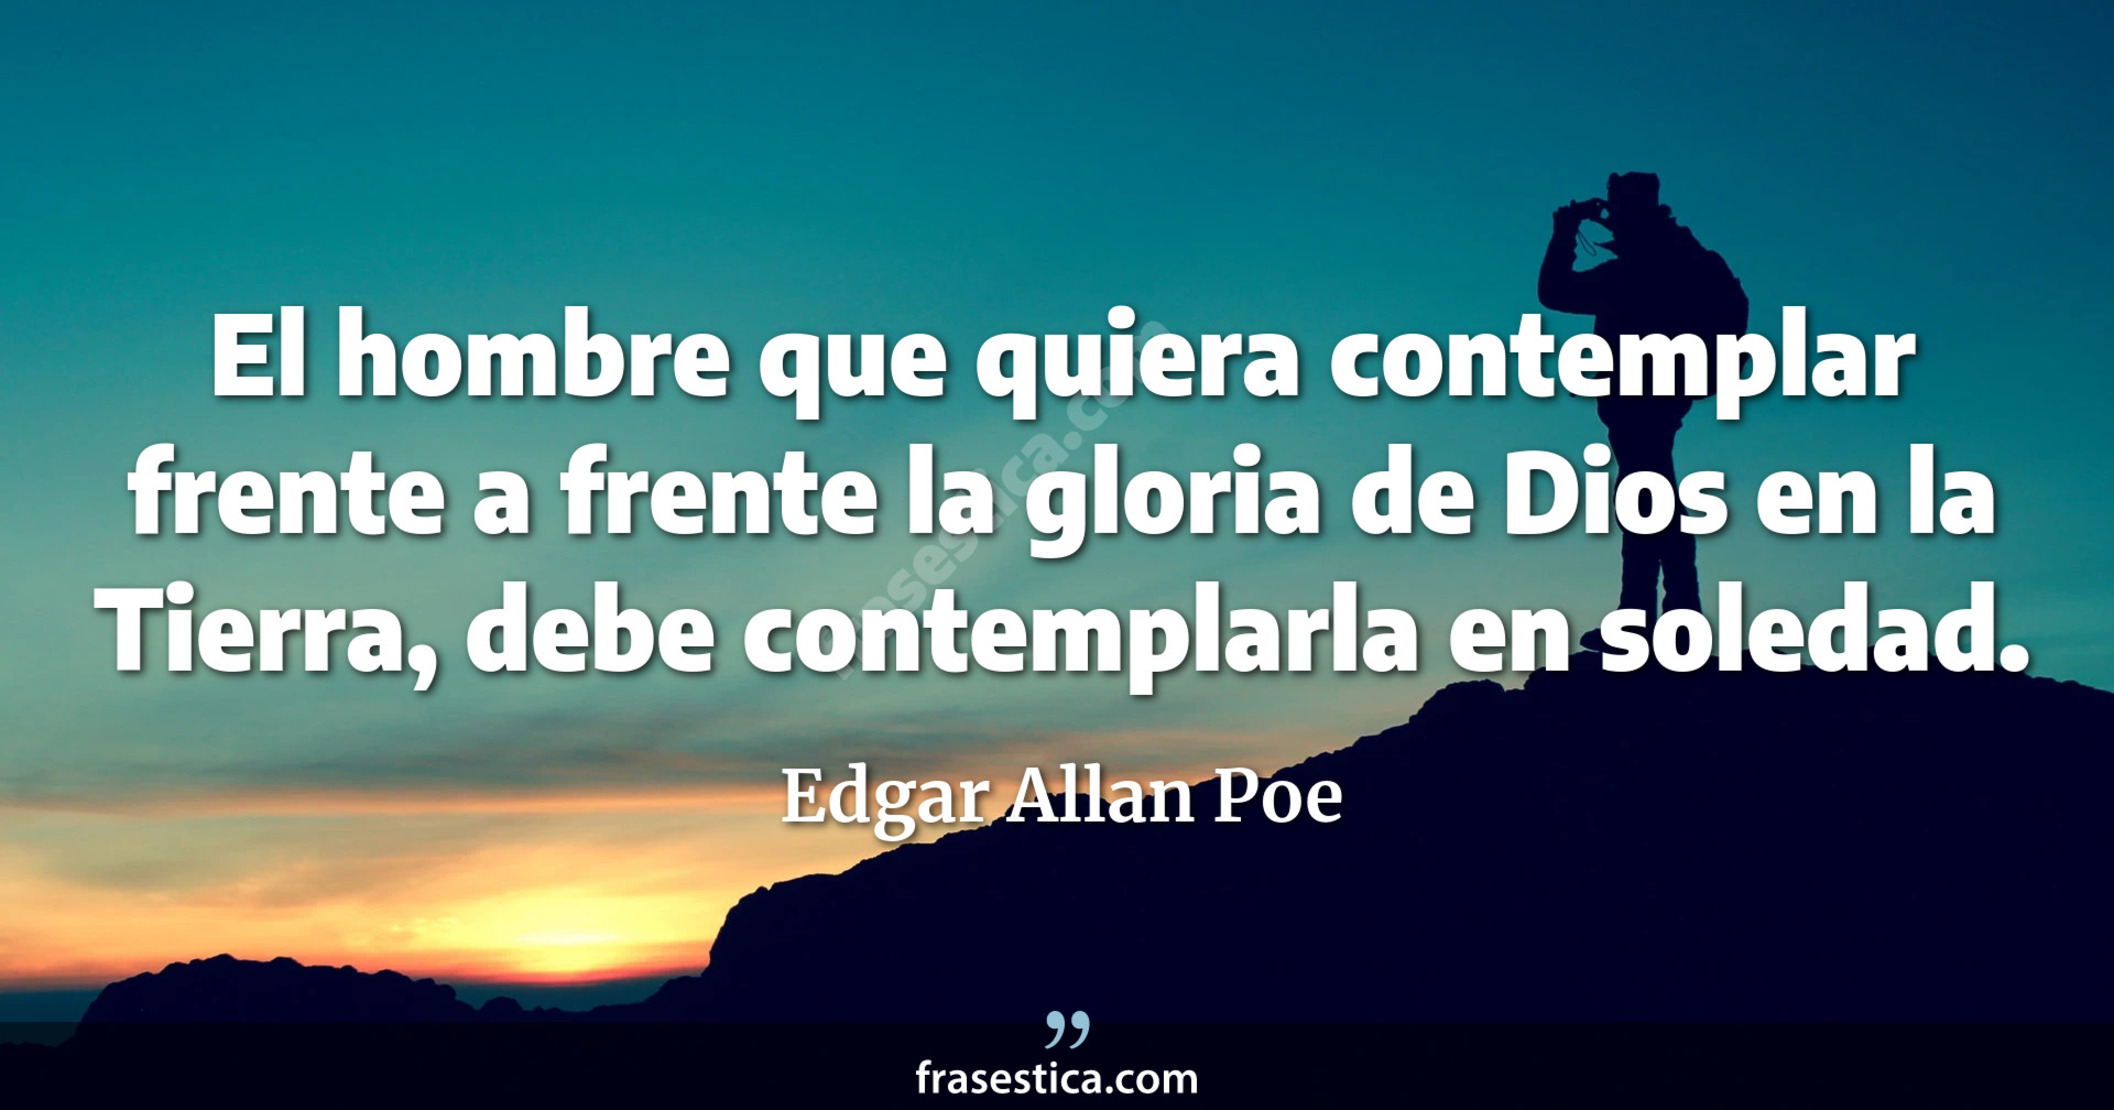 El hombre que quiera contemplar frente a frente la gloria de Dios en la Tierra, debe contemplarla en soledad. - Edgar Allan Poe